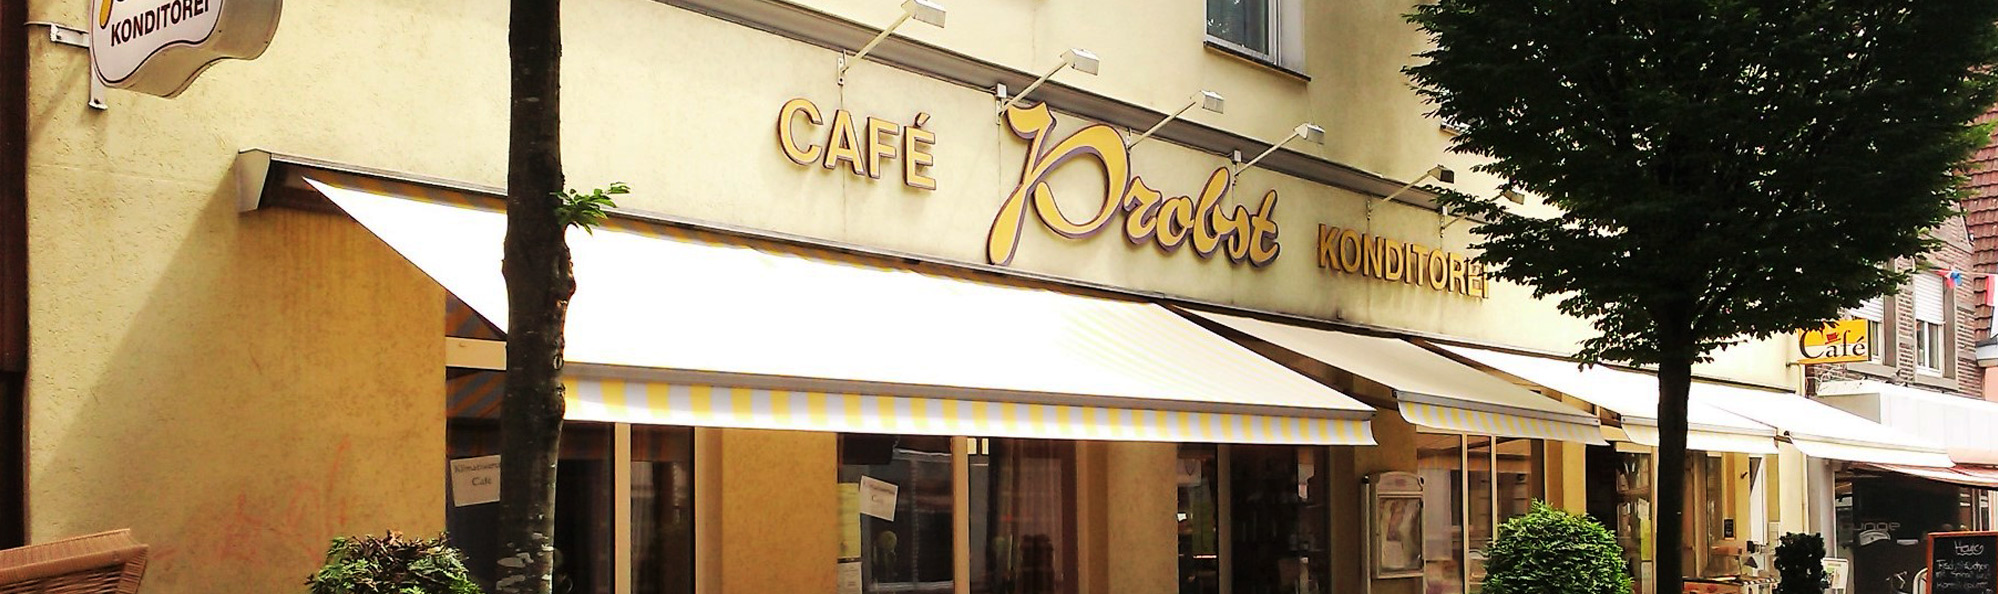 Café Konditorei Probst - Außenansicht